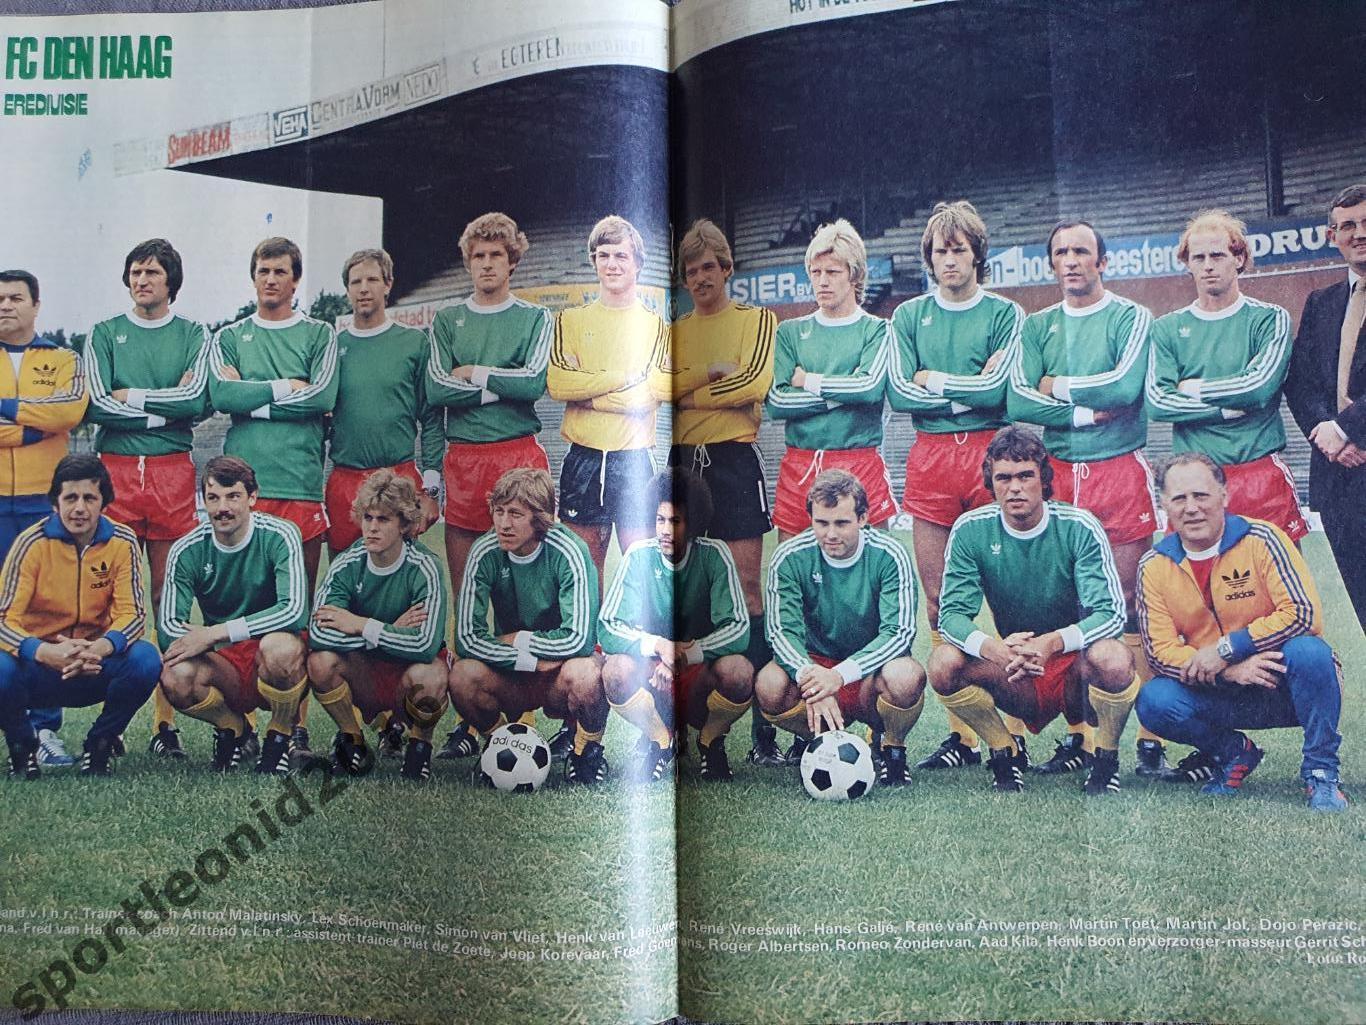 Voetbal International 1977 51 выпуск годовая подписка .1 6